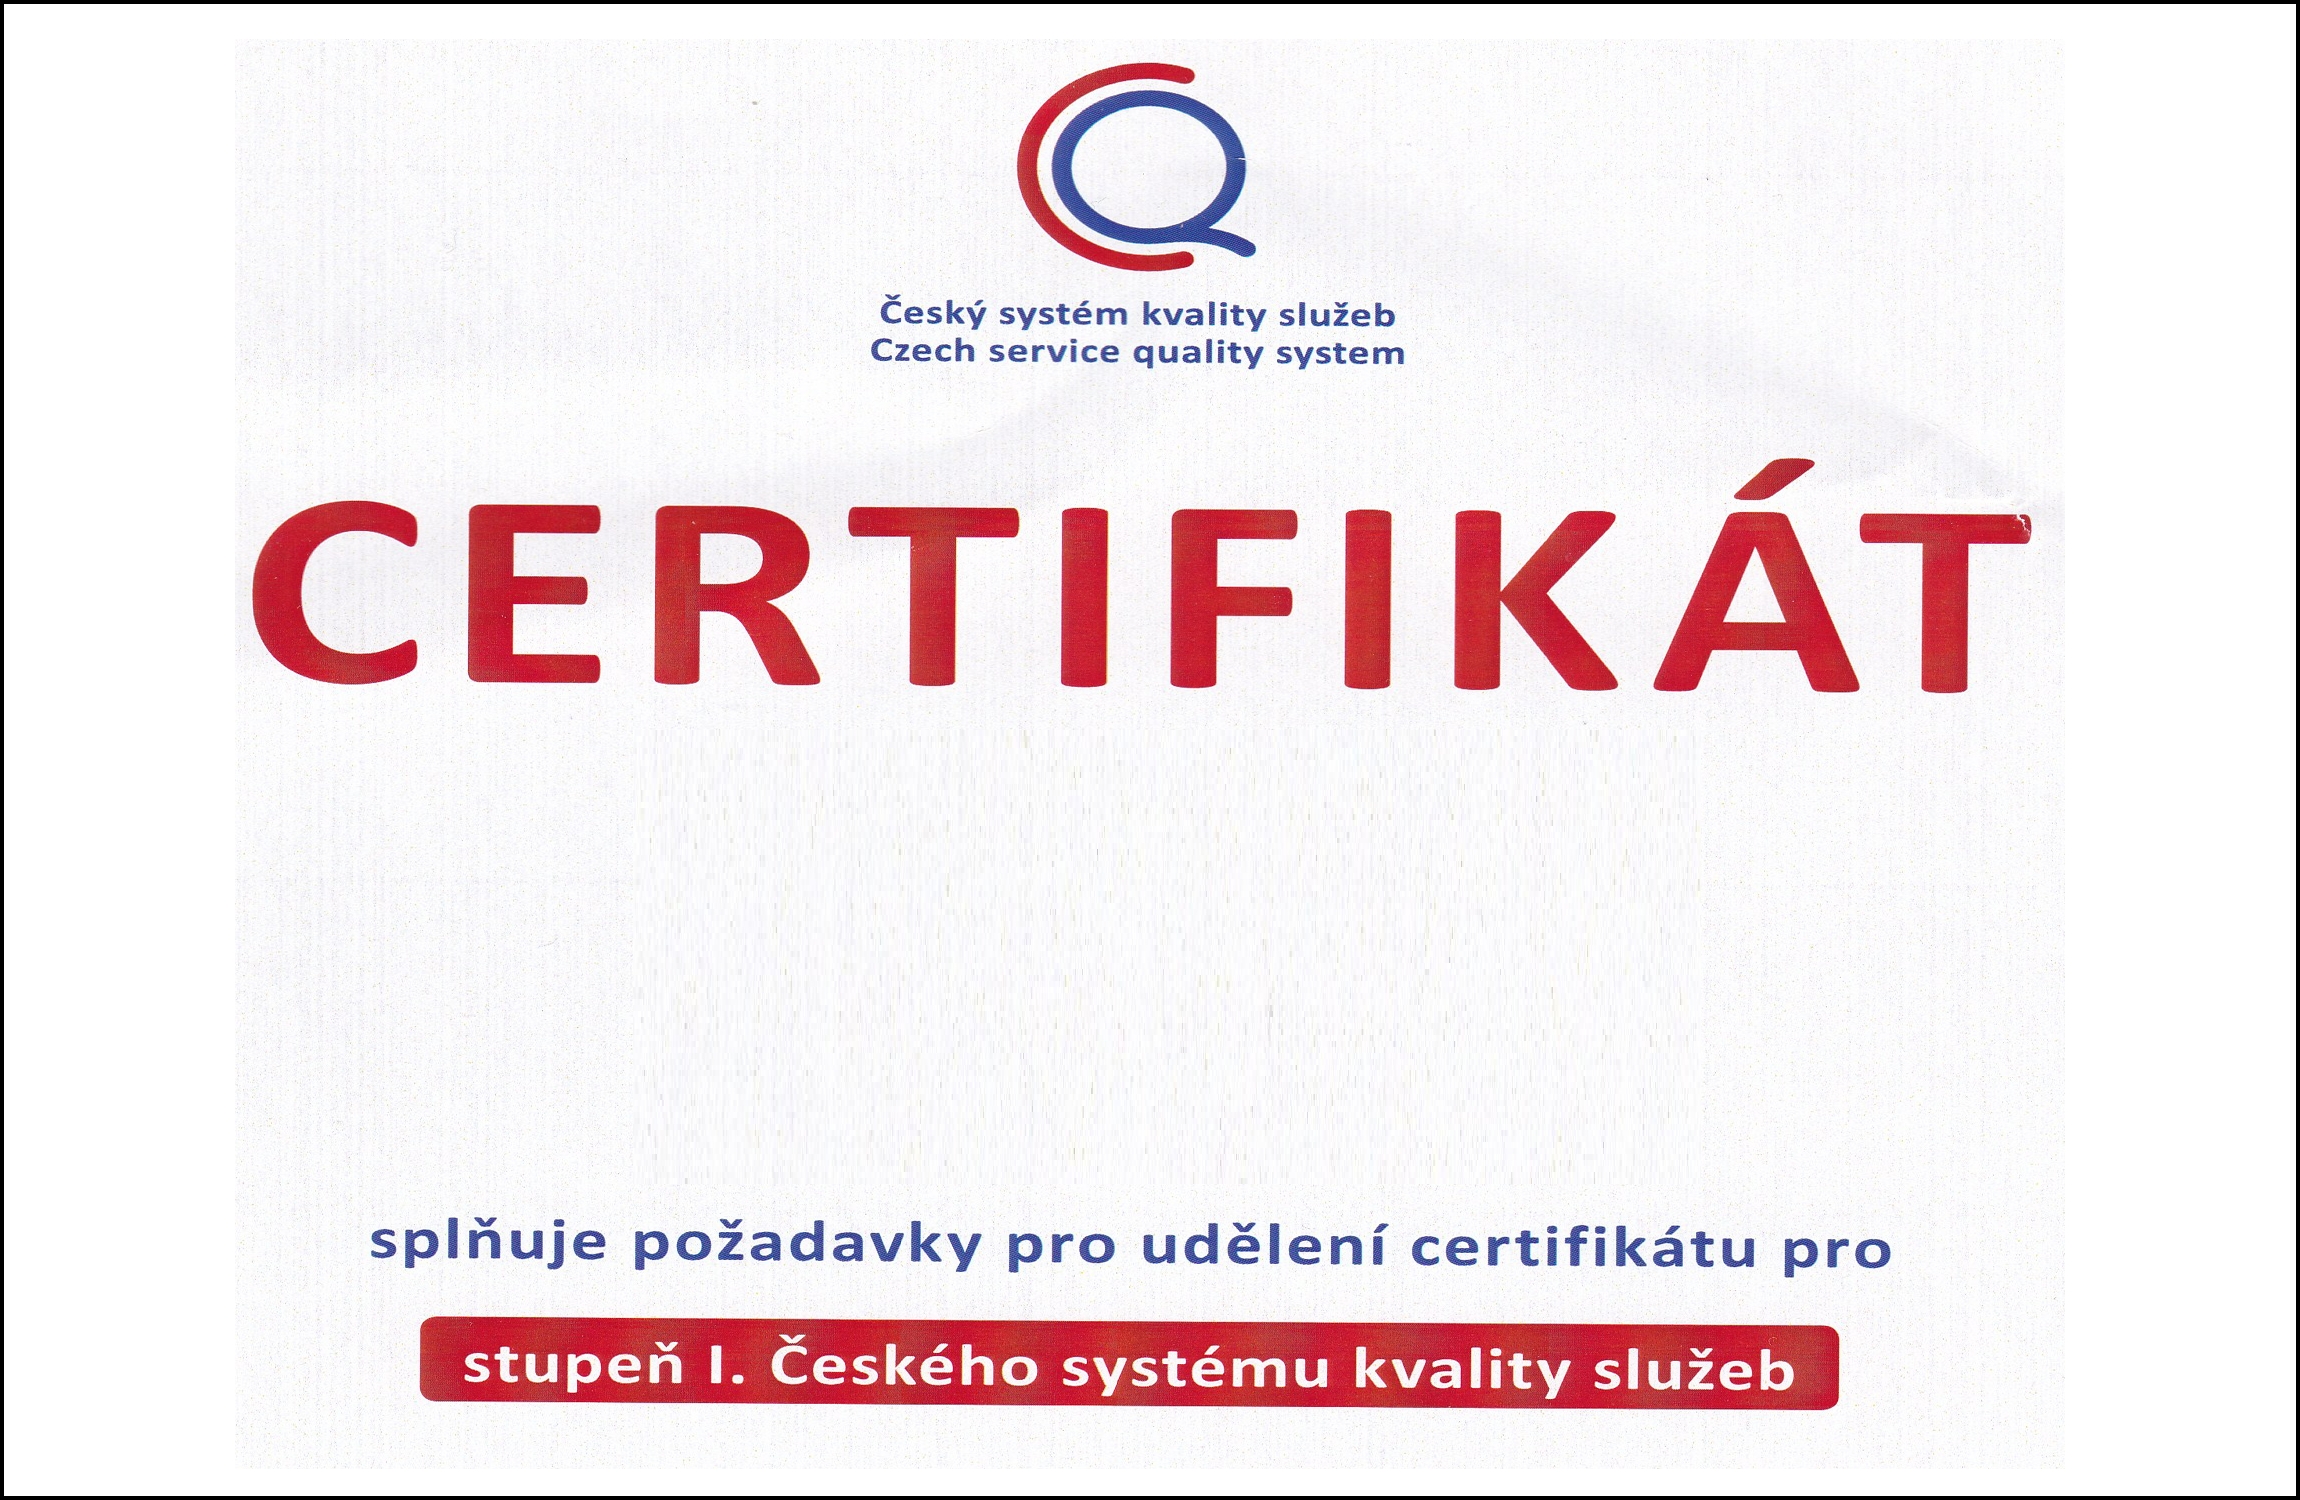 Certifikát správa ciest. ruchu - archívne foto